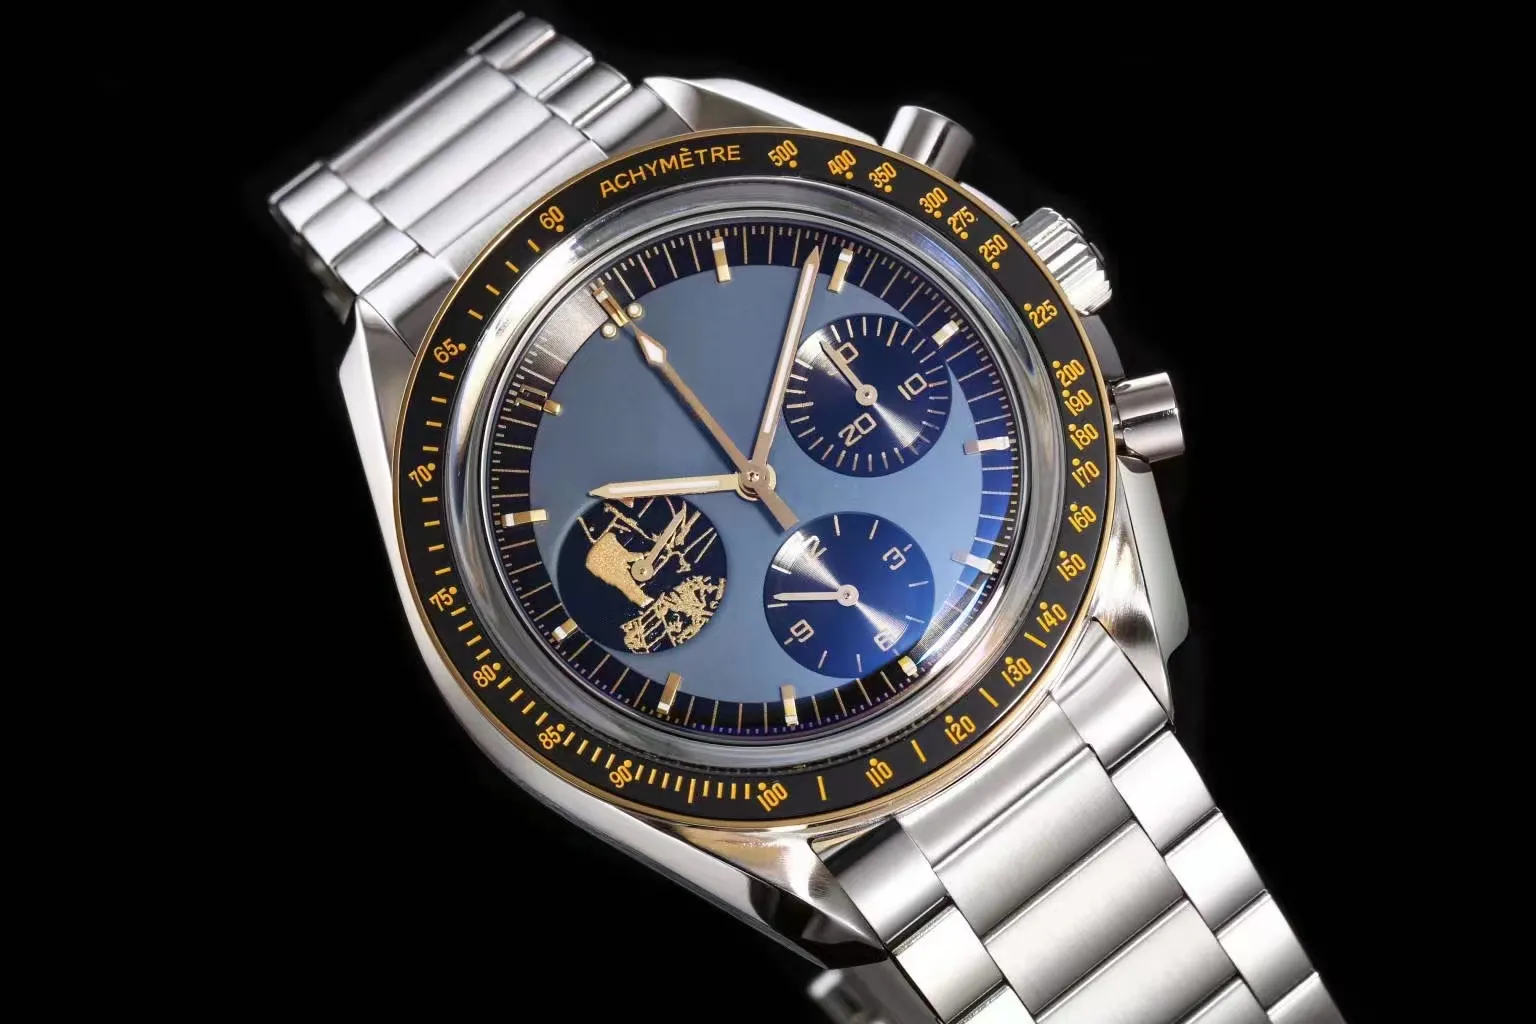 Omega mechanisch horloge Designer horloge Heren 42 mm wijzerplaat met ultrahoge kwaliteit 3861 handmatige opwindbeweging 42 mm zilveren kast Super waterdicht luxe maanhorloge